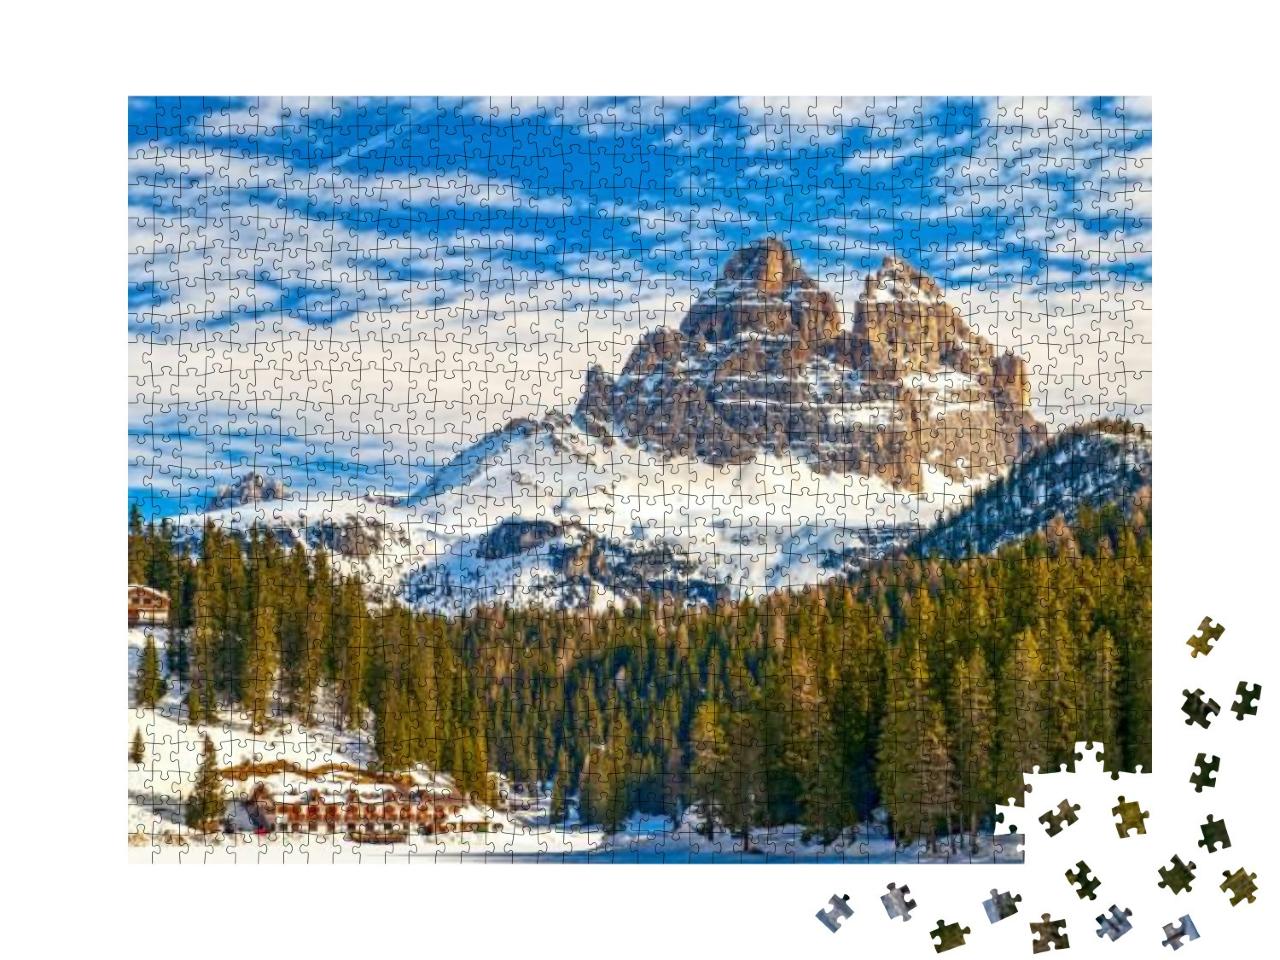 Puzzle 1000 Teile „Drei Zinnen vom Misurina-See in den Dolomiten aus“